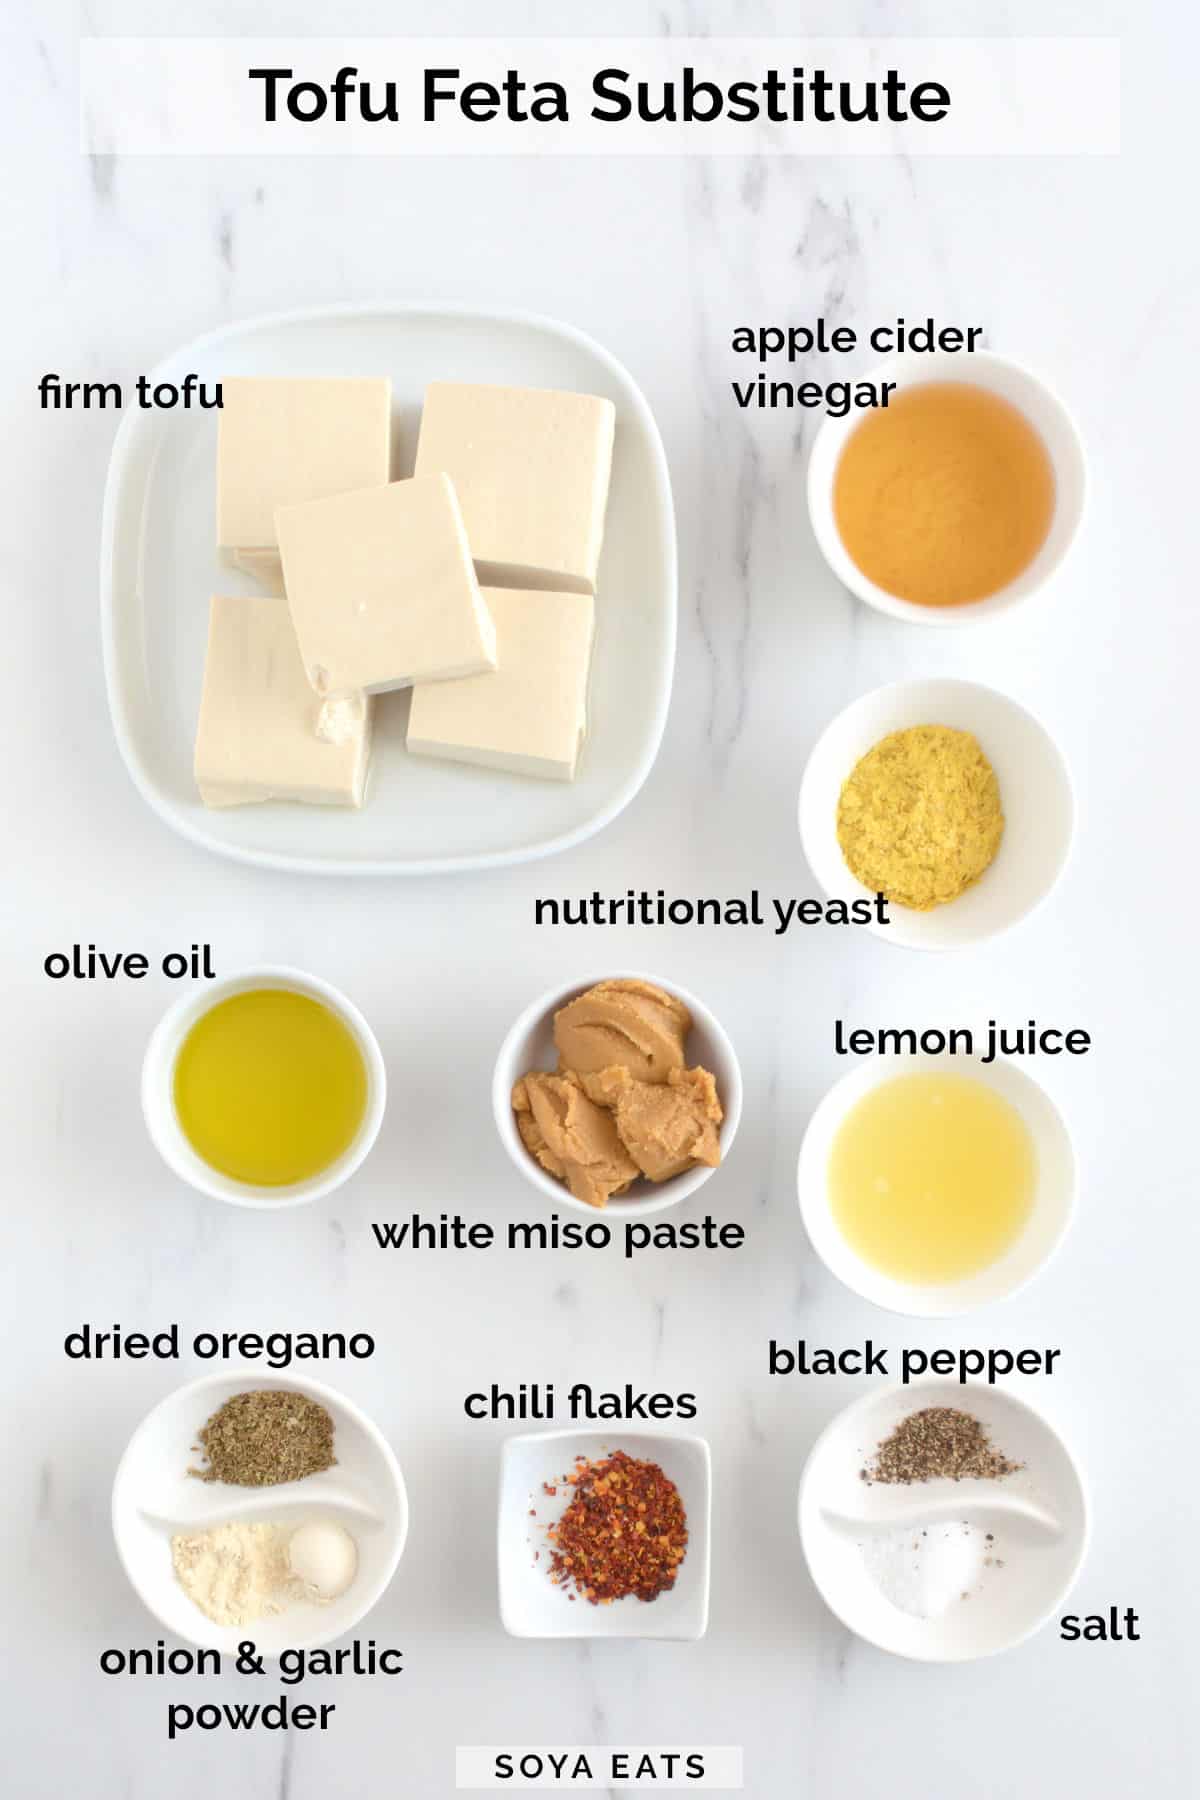 Image showing ingredients needed to make tofu feta.